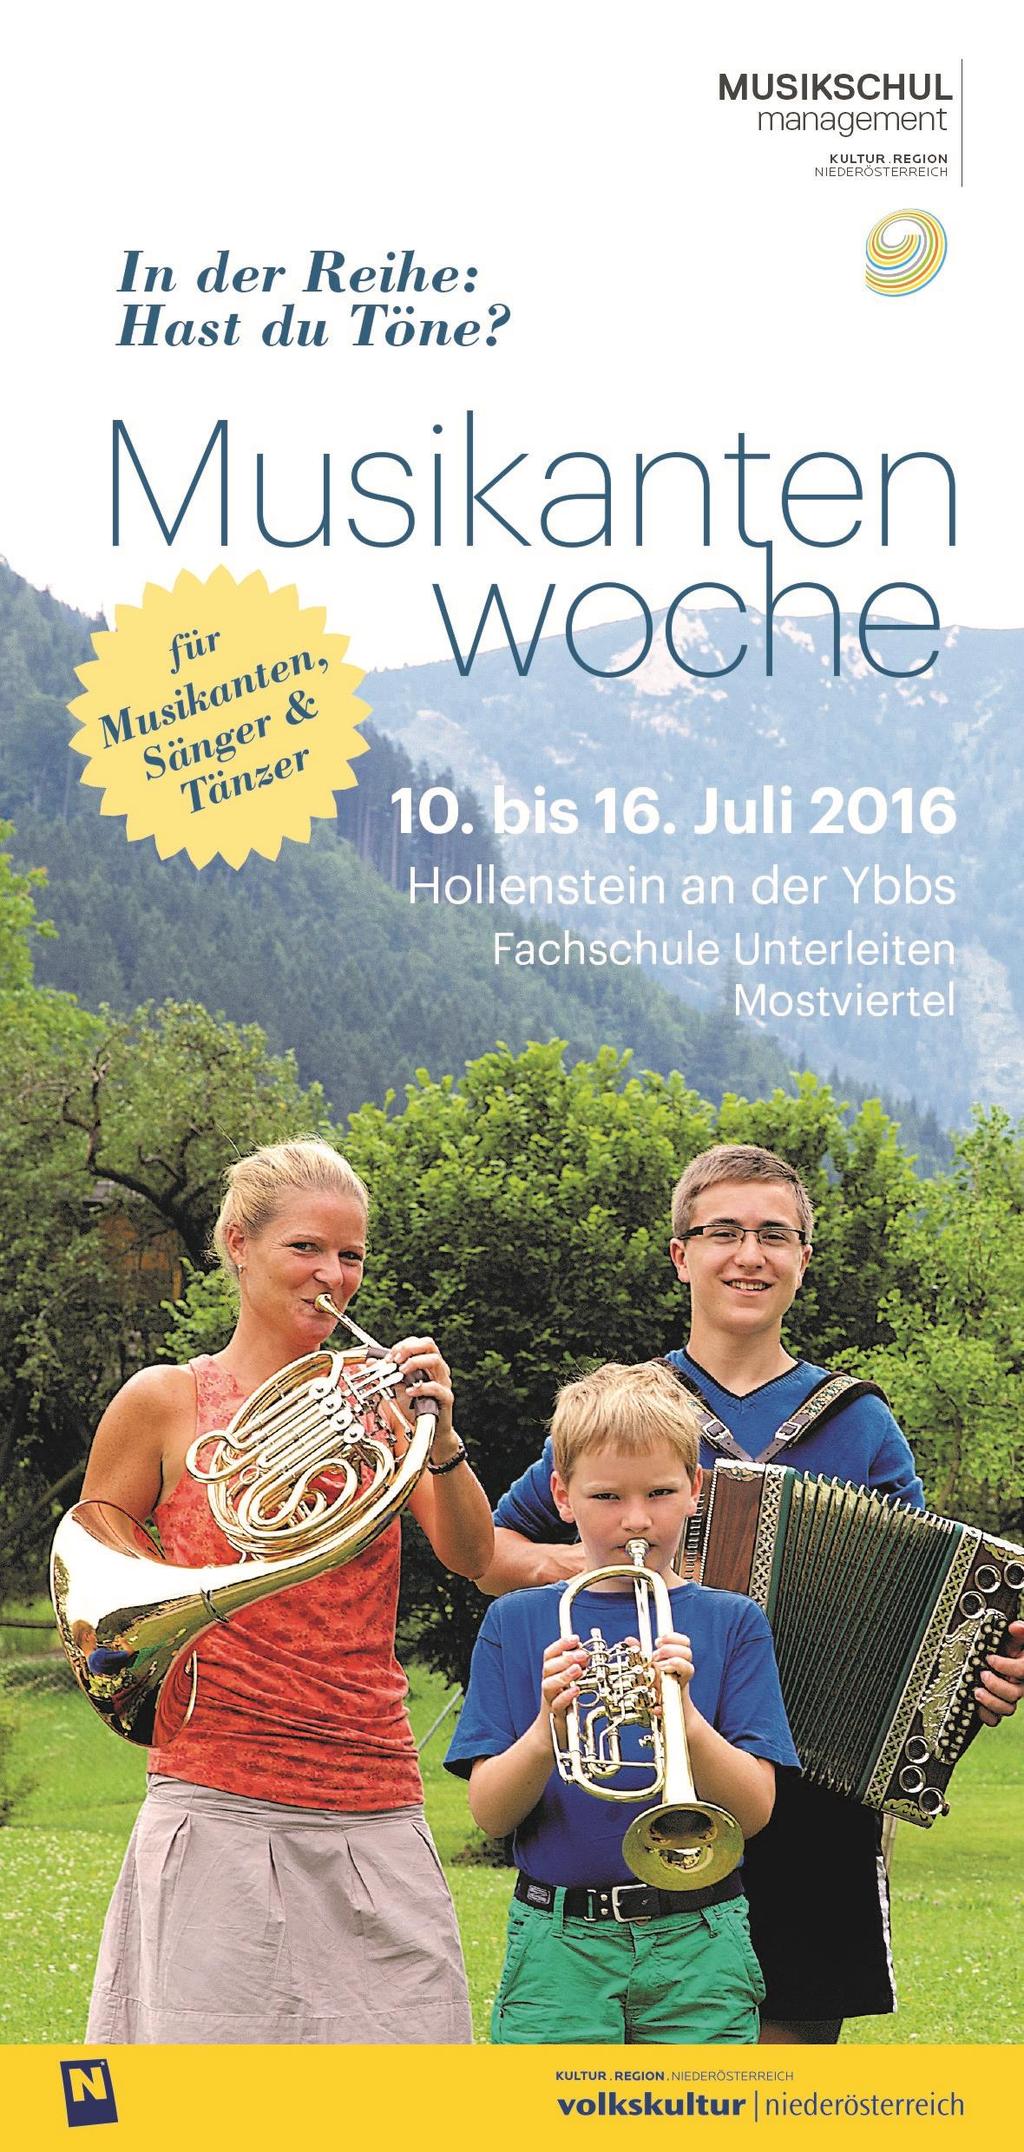 Informationen zur Musikantenwoche: Volkskultur Niederösterreich, 02732 85015 23, birgit.